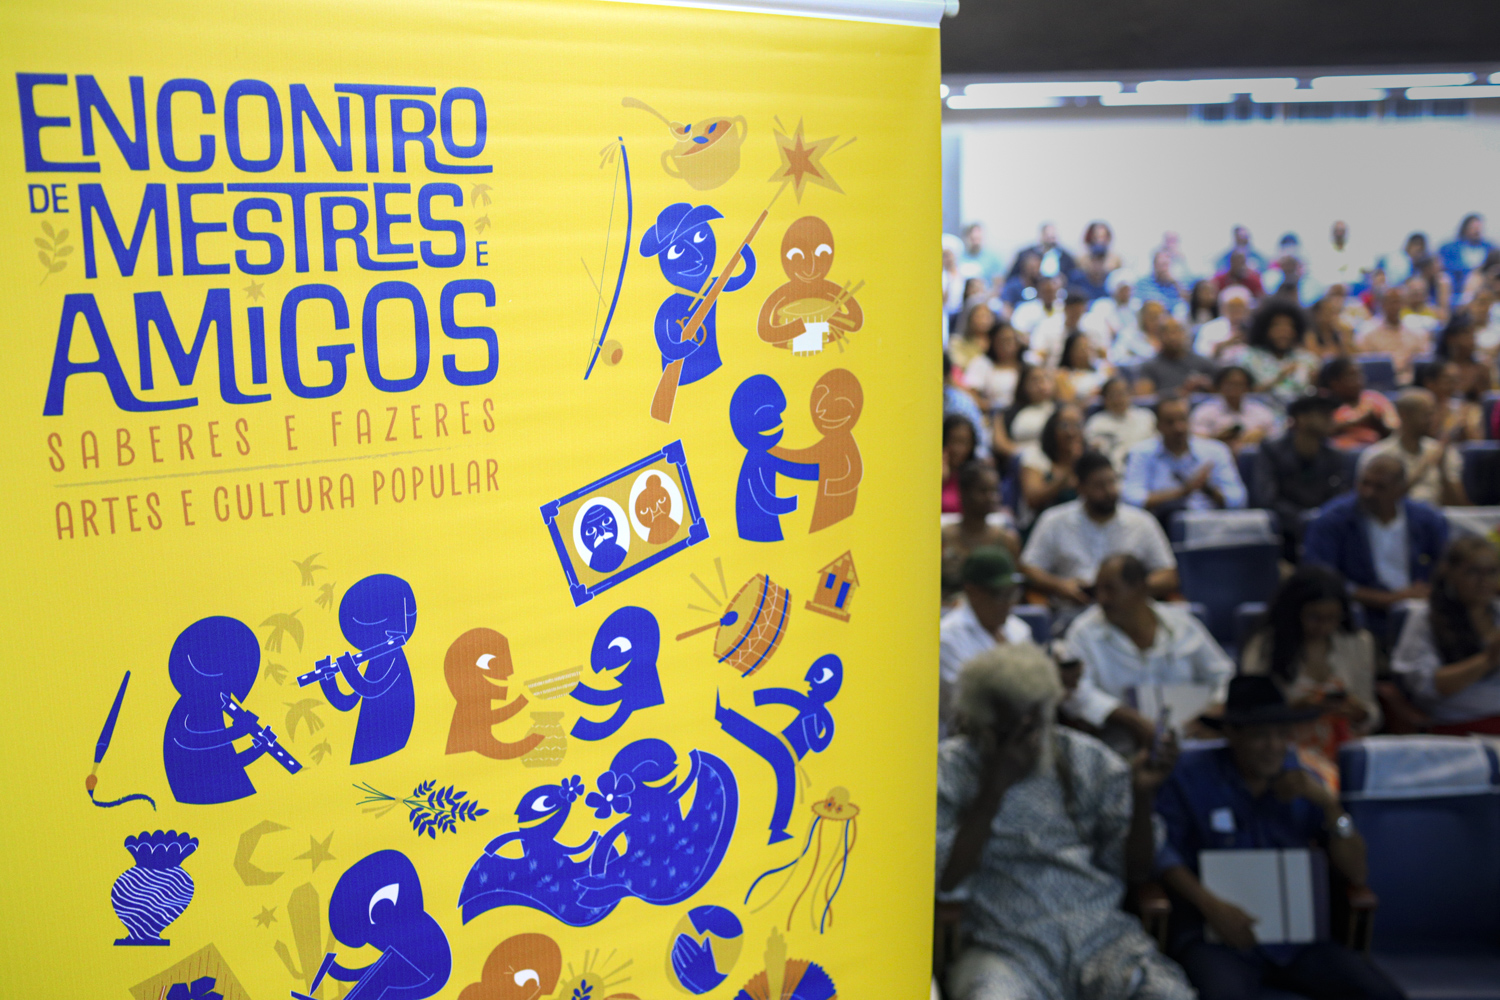 Evento foi realizado no auditório Libório Firmo, no Campus de São Cristóvão. (Foto: Adilson Andrade/Ascom UFS)